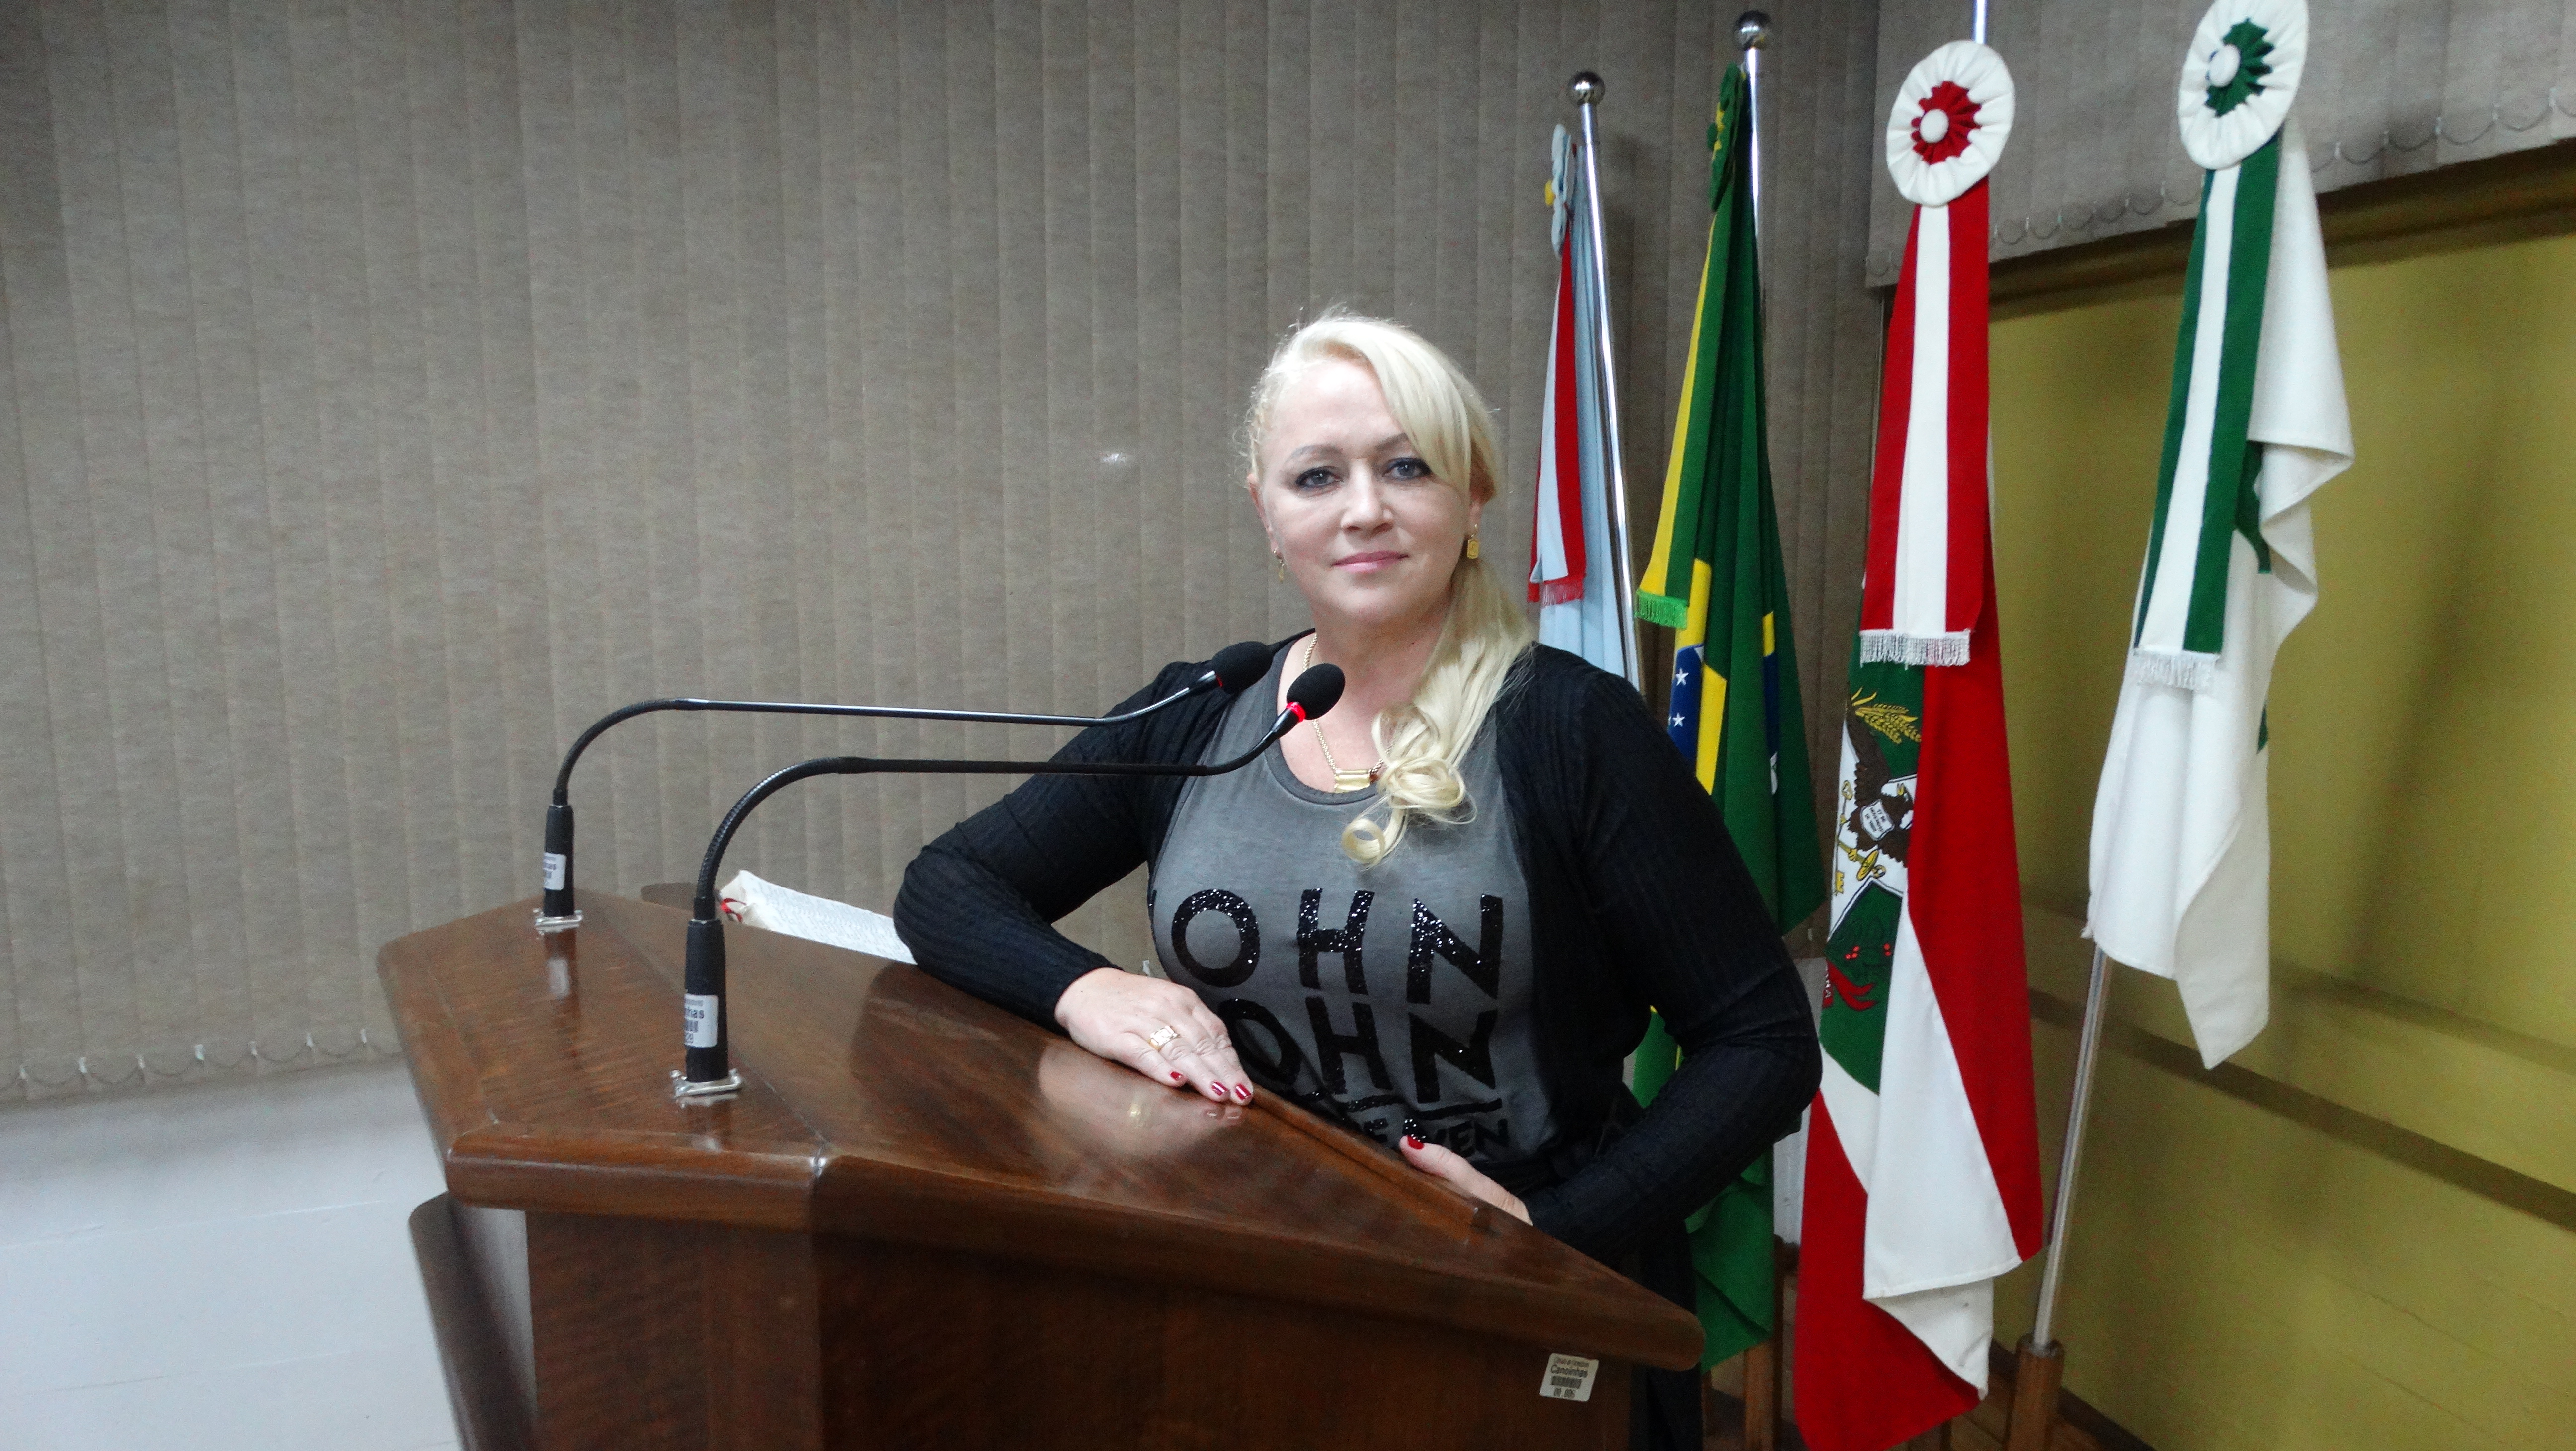 Vereadora Telma Bley solicita informações sobre o Transporte Coletivo no município de Canoinhas